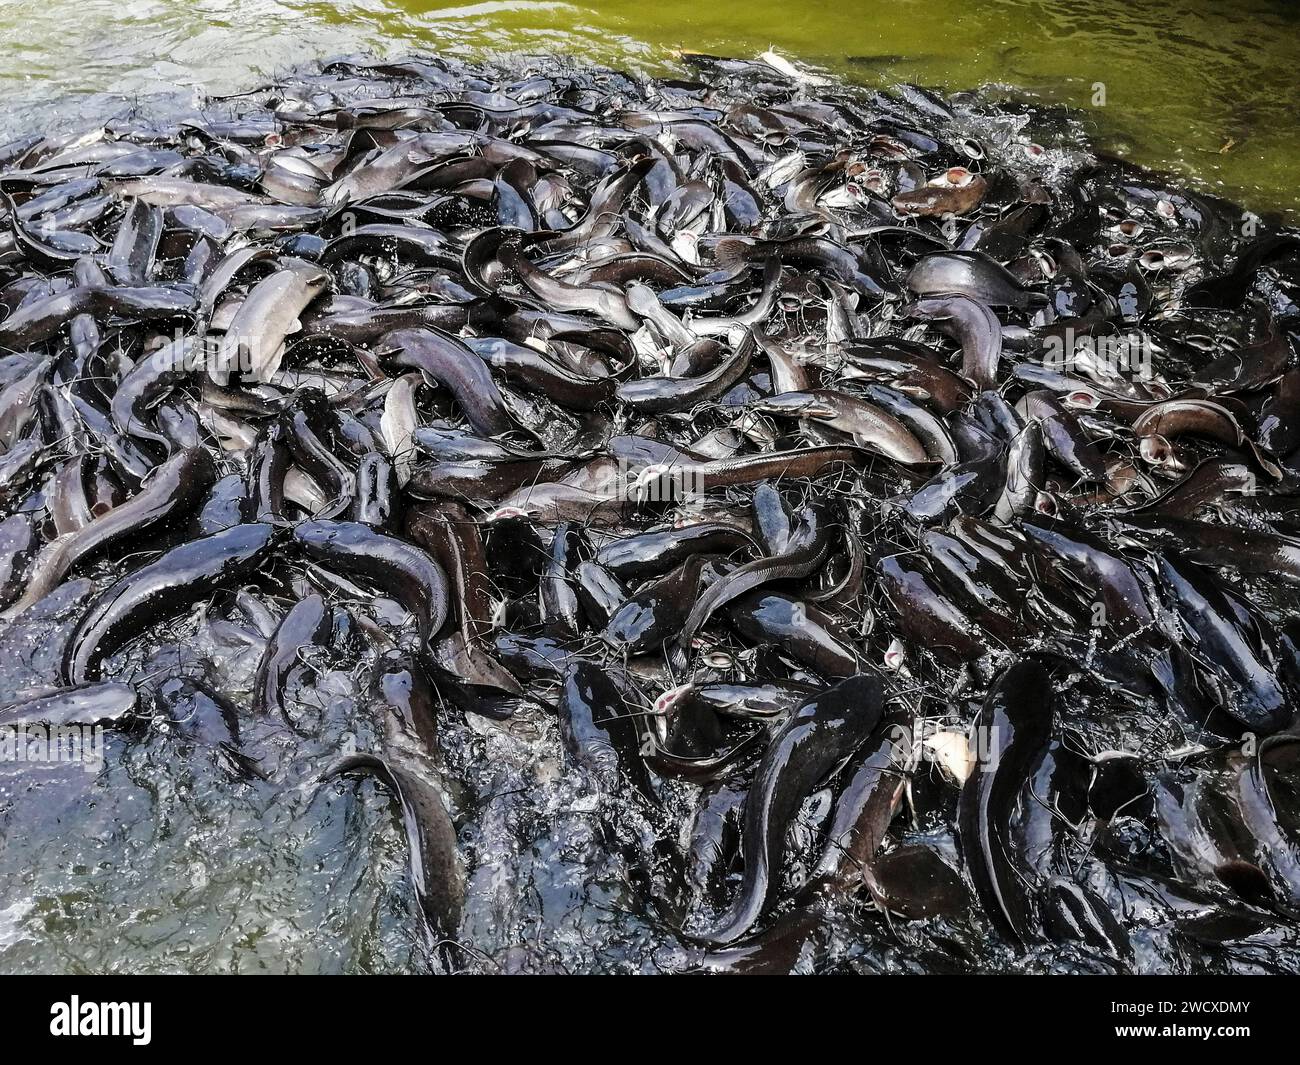 Vietnam, Mekon Delta, catfish Stock Photo